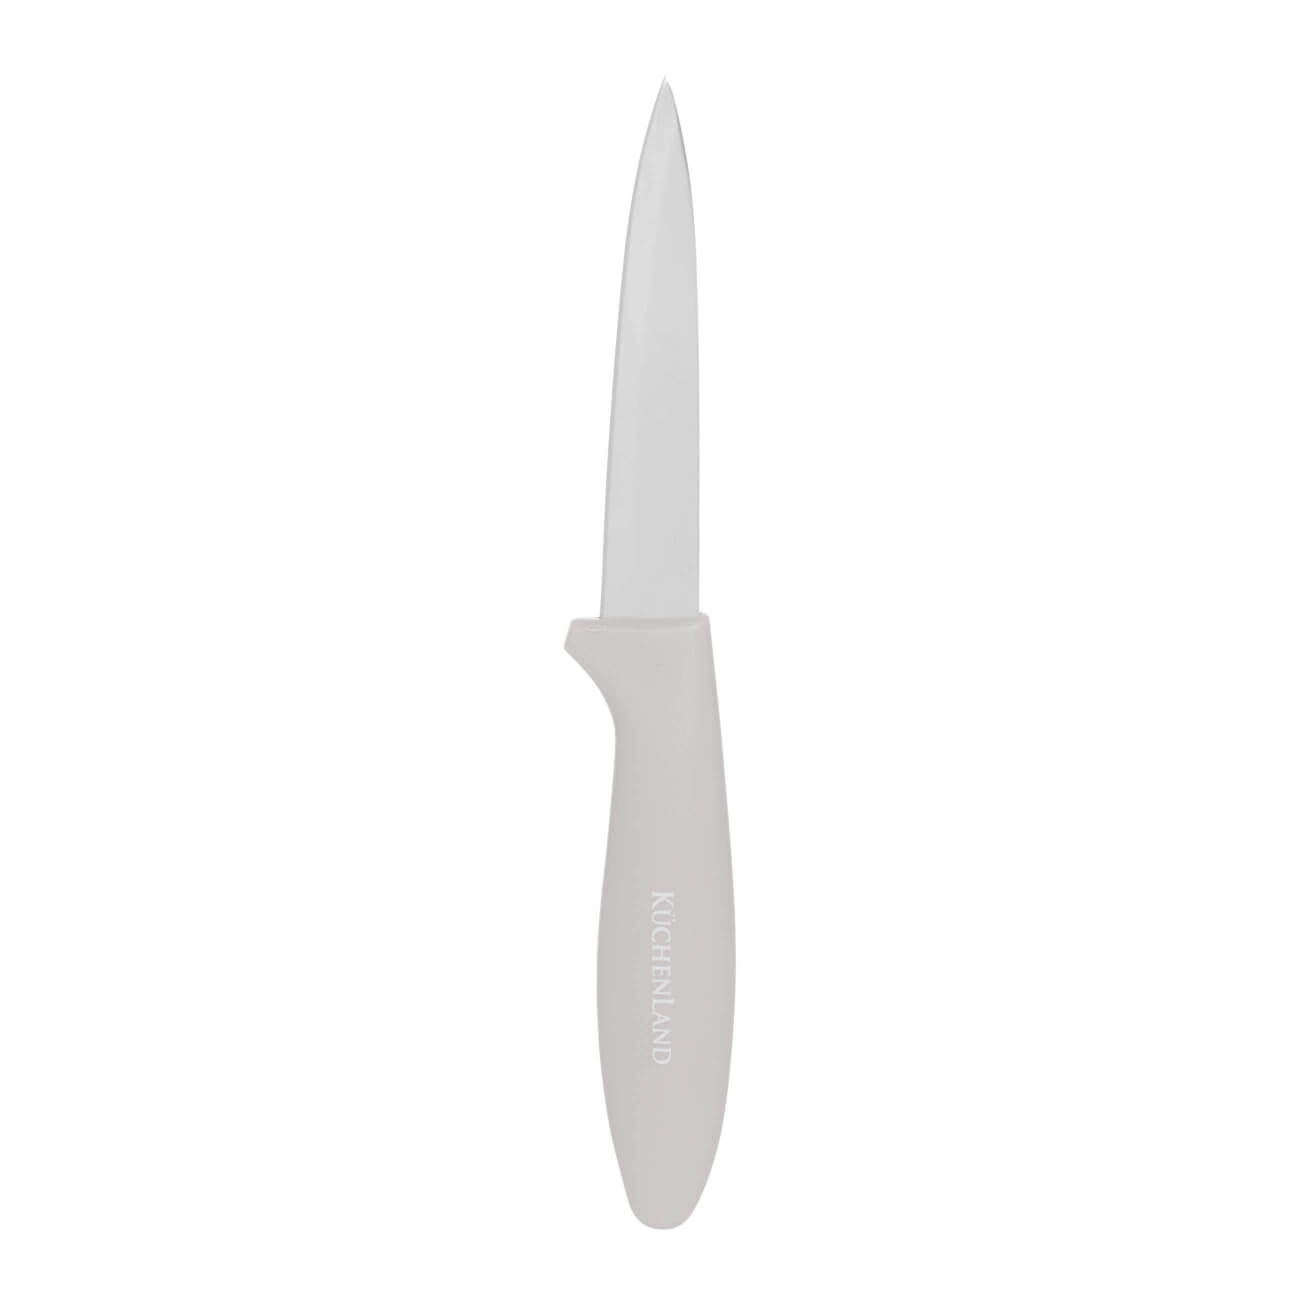 Нож для чистки овощей, 9 см, сталь/пластик, серо-коричневый, Regular электрический измельчитель для овощей станкопромгрупп